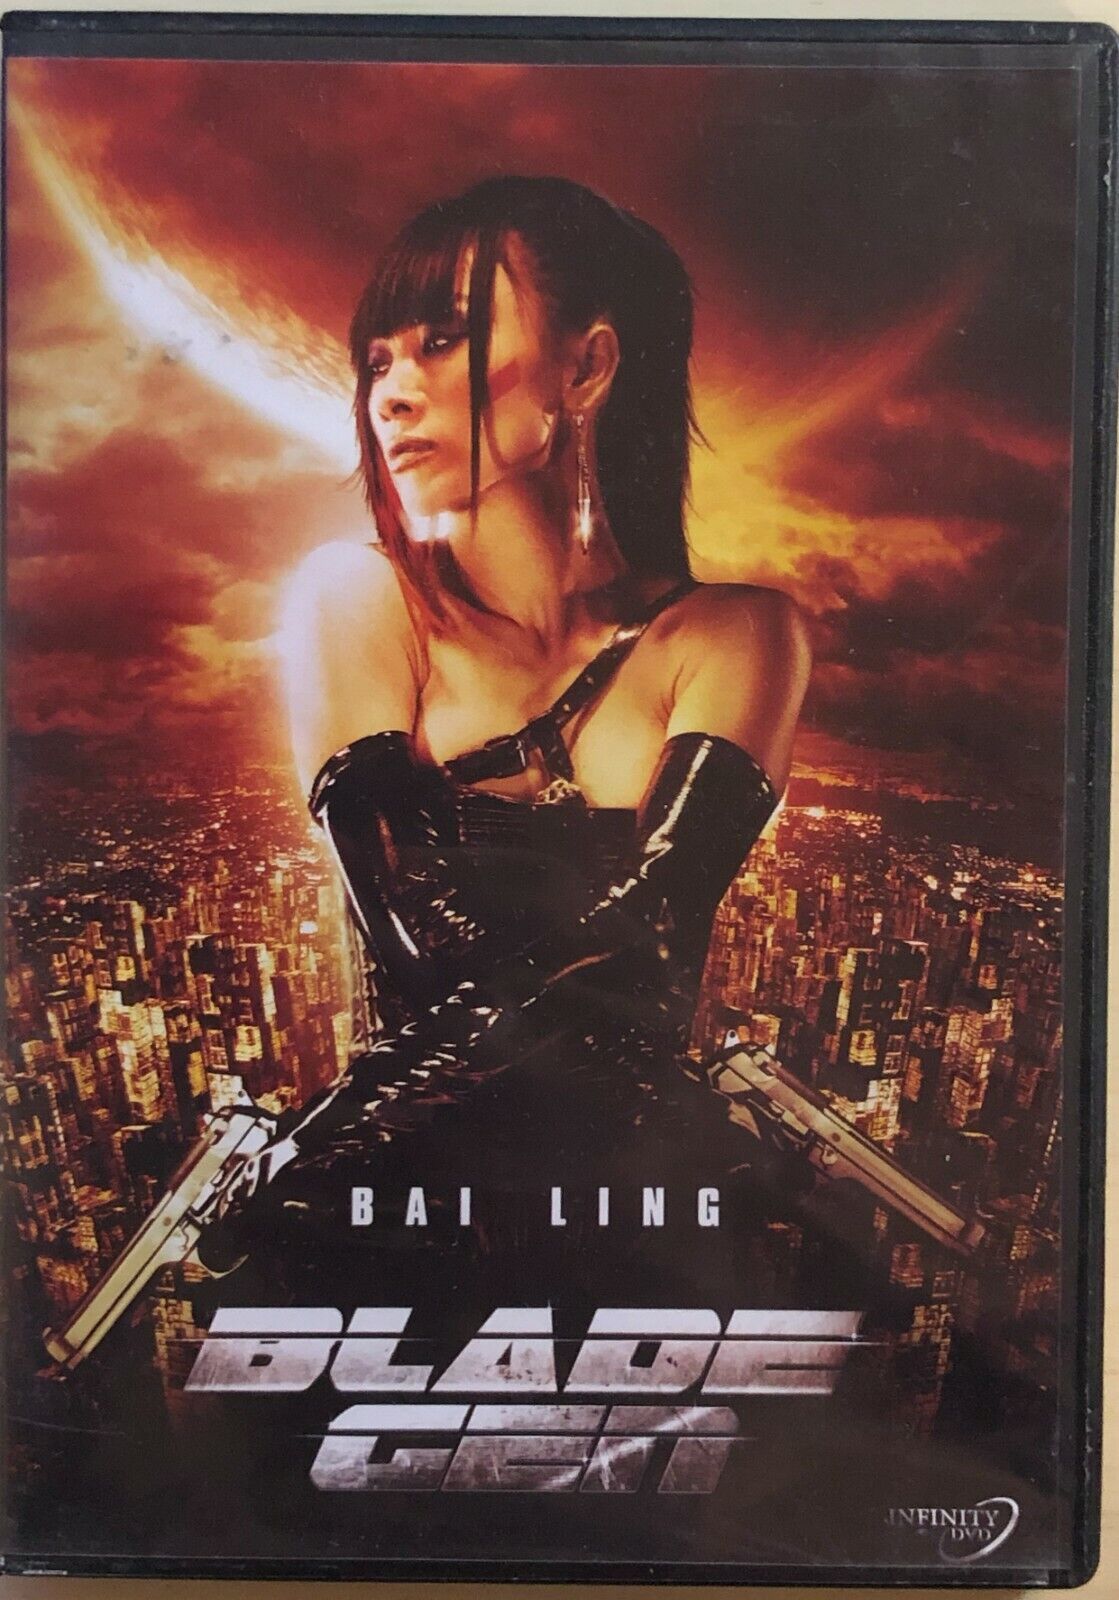 Blade Gen DVD di Bai Ling, 2007, Infinity DVD